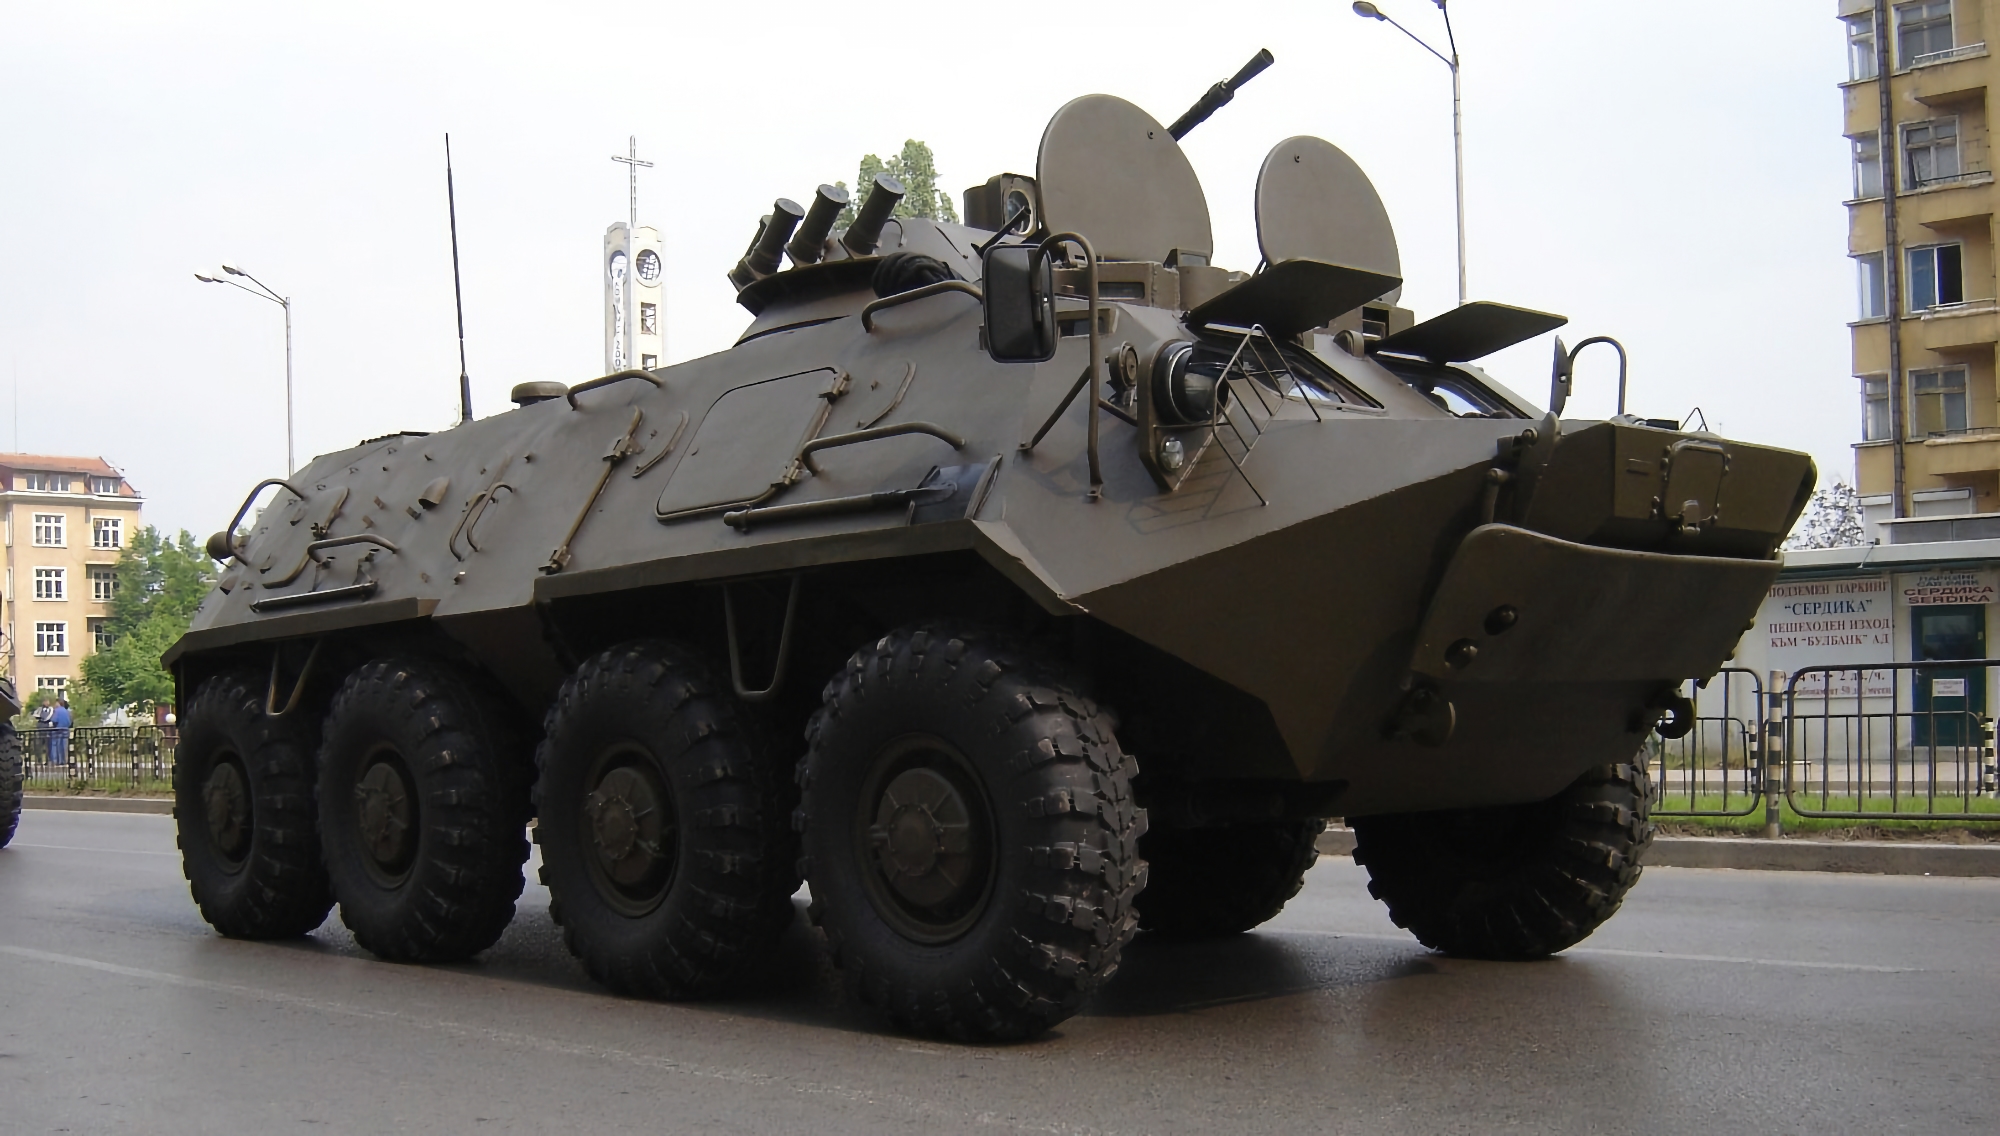 Bulgarien overdrager 100 lovede pansrede mandskabsvogne til Ukraine